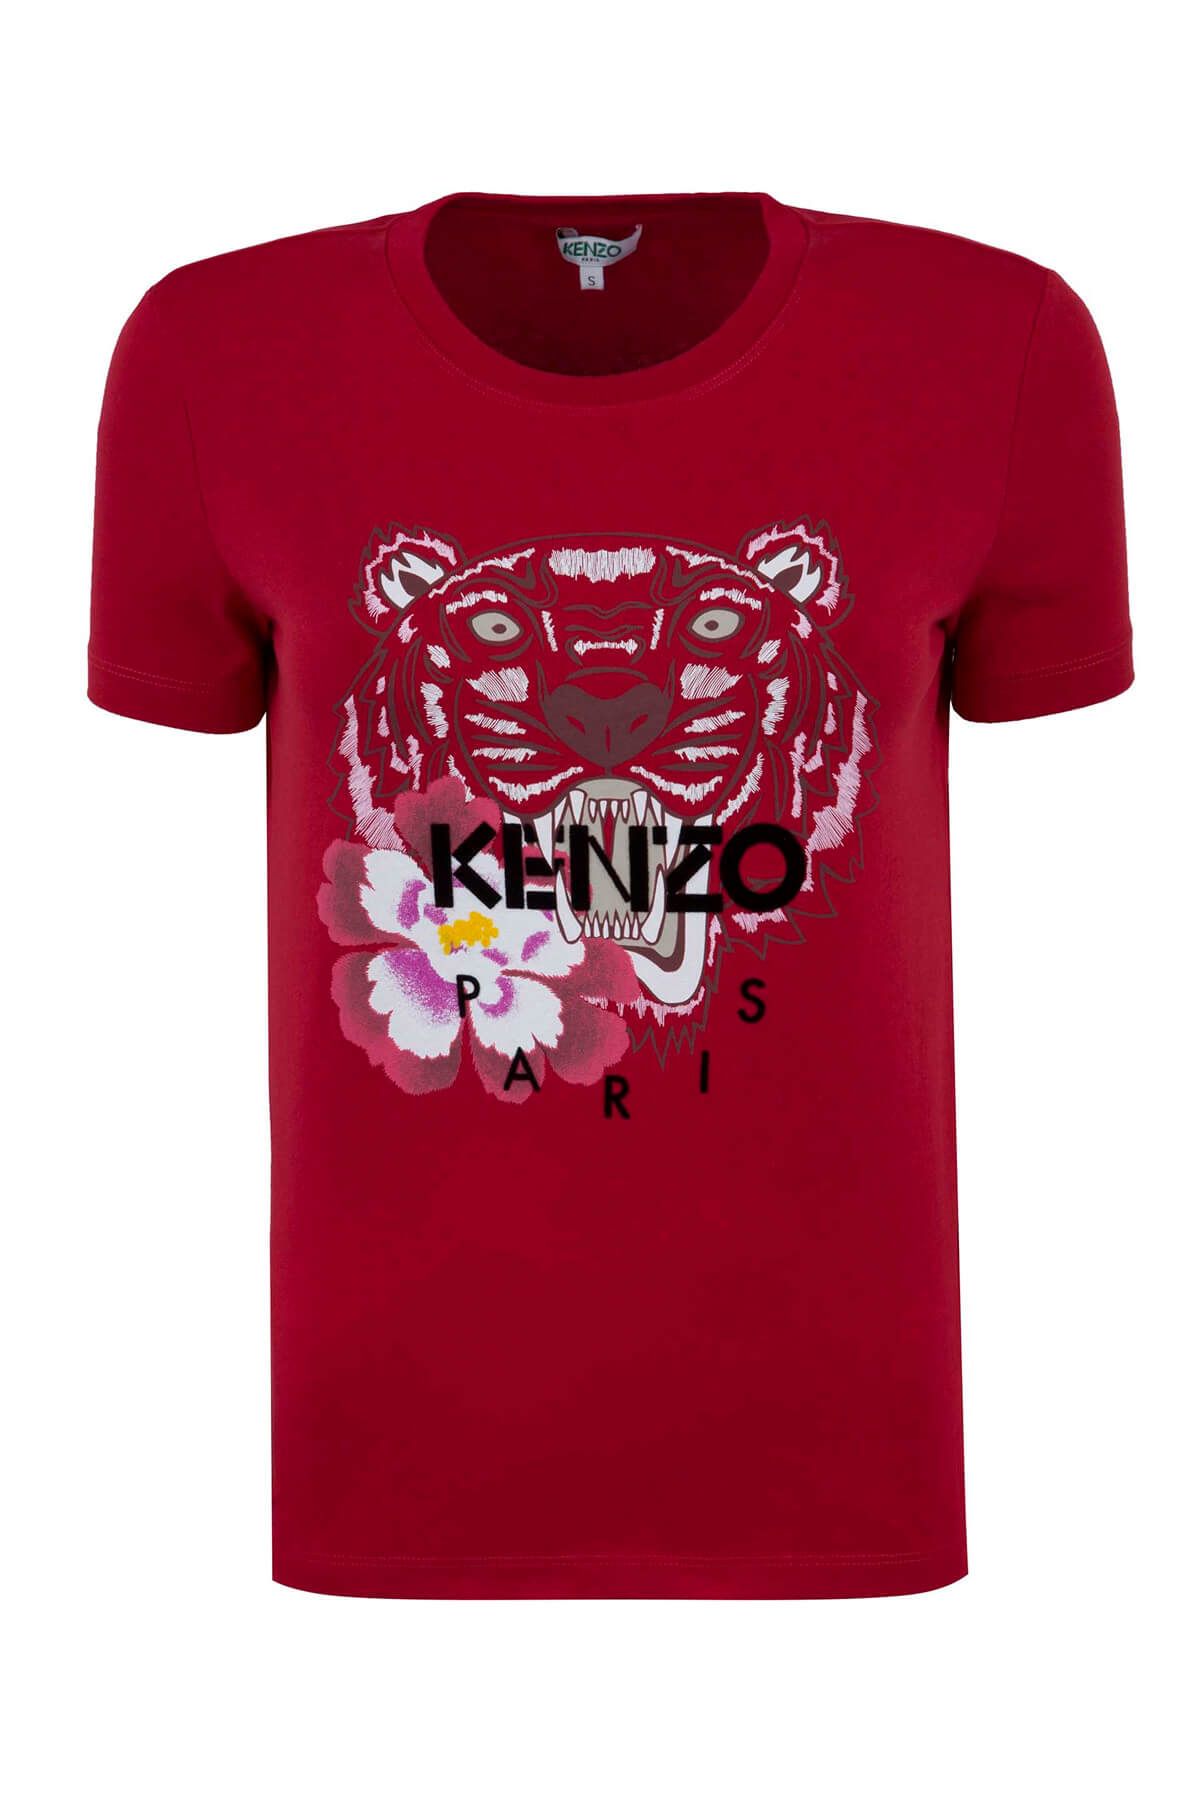 Kenzo Kadın Kırmızı T-Shirt F86 2Ts763 4Yg 21